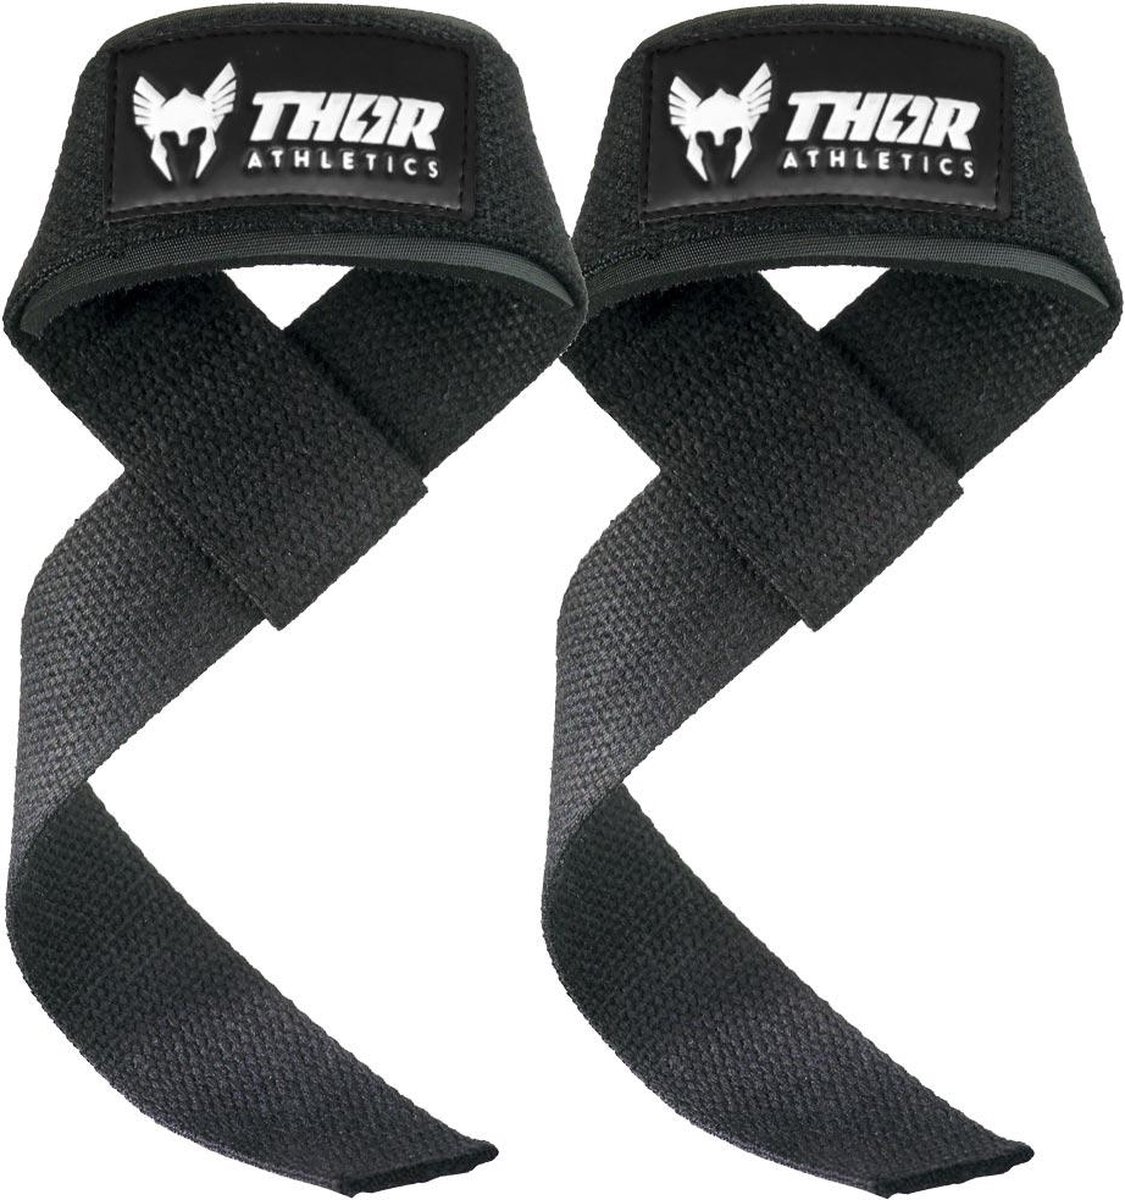 Thor Athletics – Lifting Straps Zwart. Zeer hoog comfort